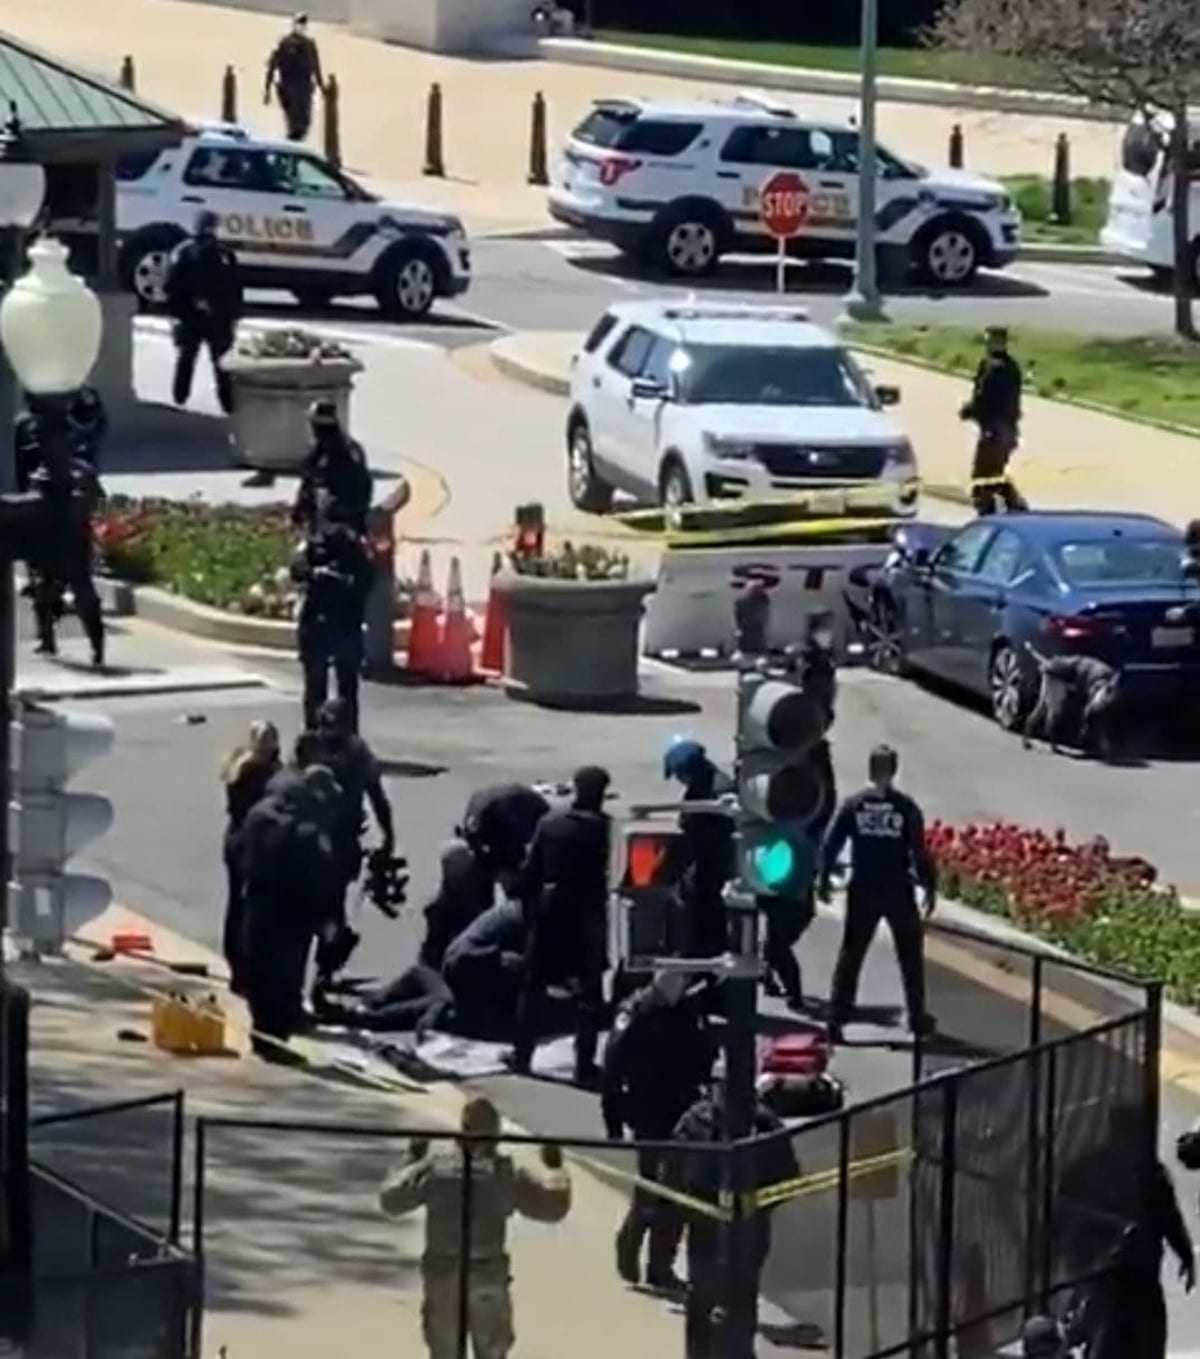 Un hombre atropelló a dos policías que estaban en un filtro de seguridad del Capitolio de Estados Unidos, lo que dejó dos muertos: un agente y el atacante.